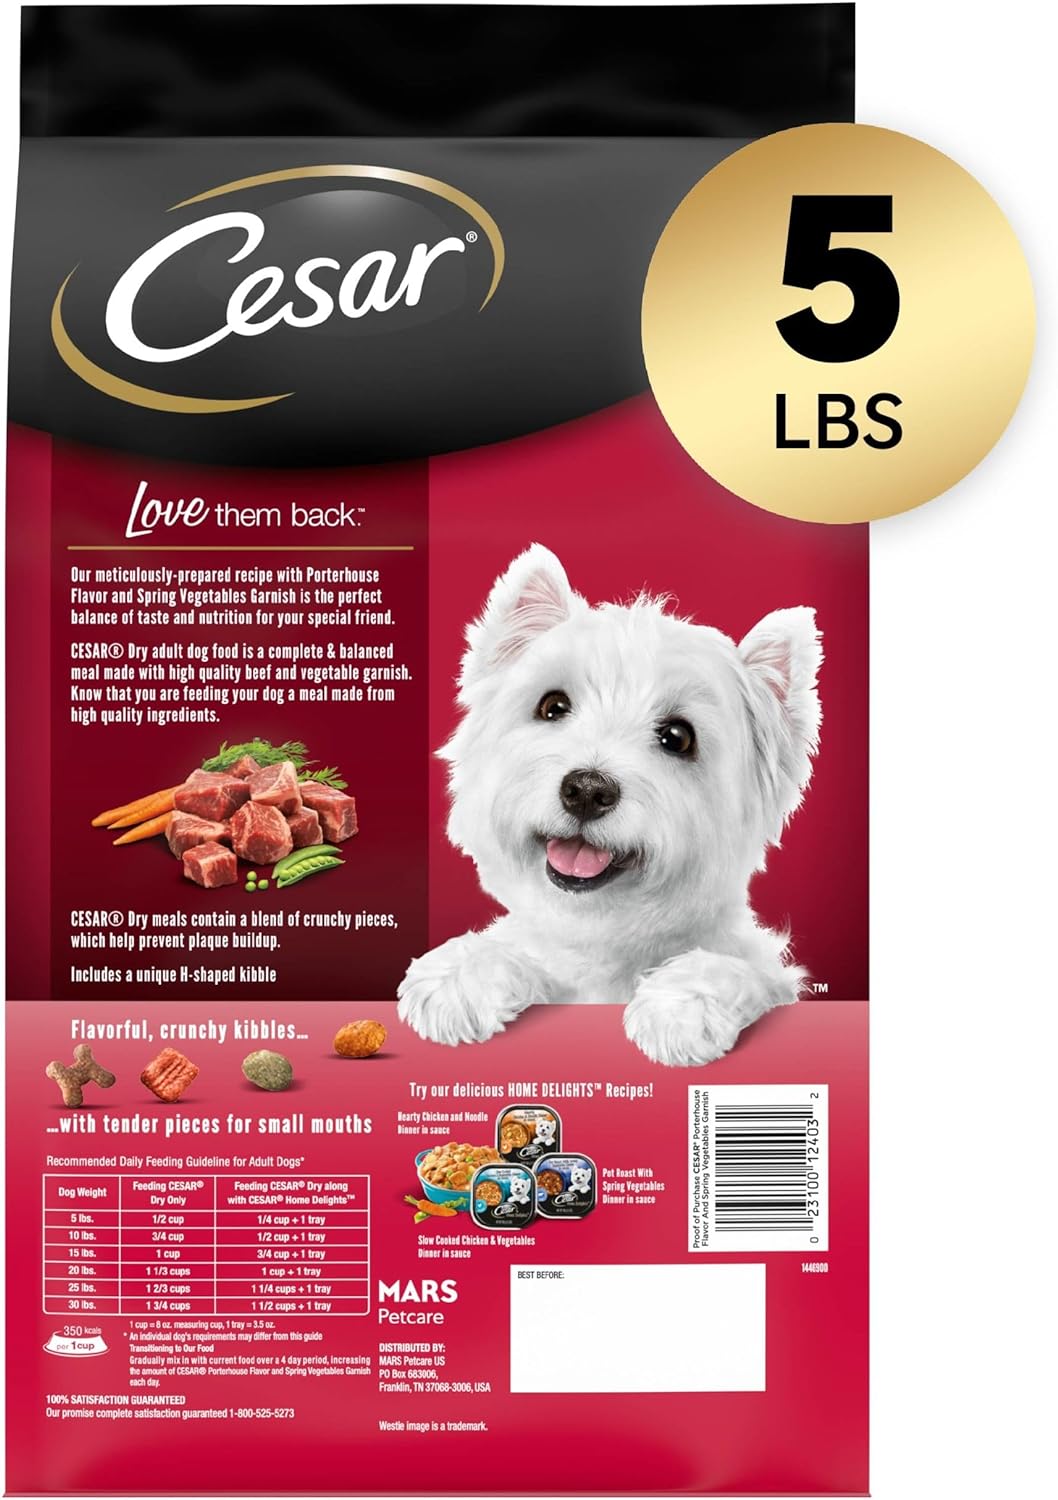 Cesar Porterhouse Flavor & Spring Vegetables Garnish Dry Dog Food – Gallery Image 2